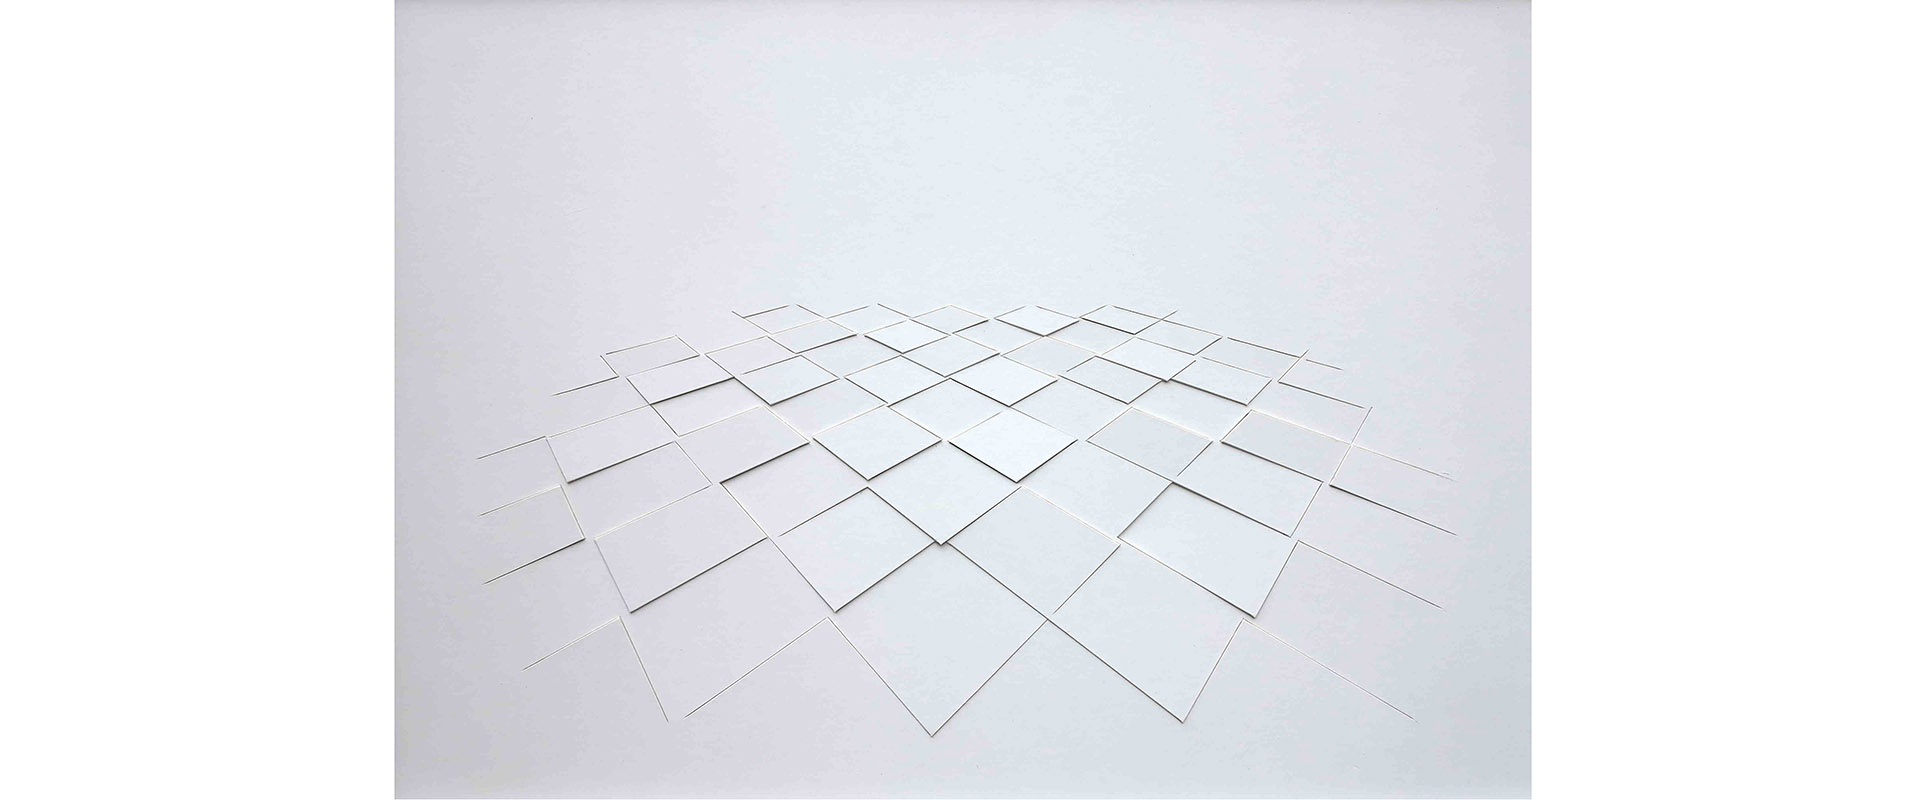 Franz Riedl, Raumverteilung II - 2020, Papierrelief, Karton geschnitten, gerahmt, 34 x 47 cm